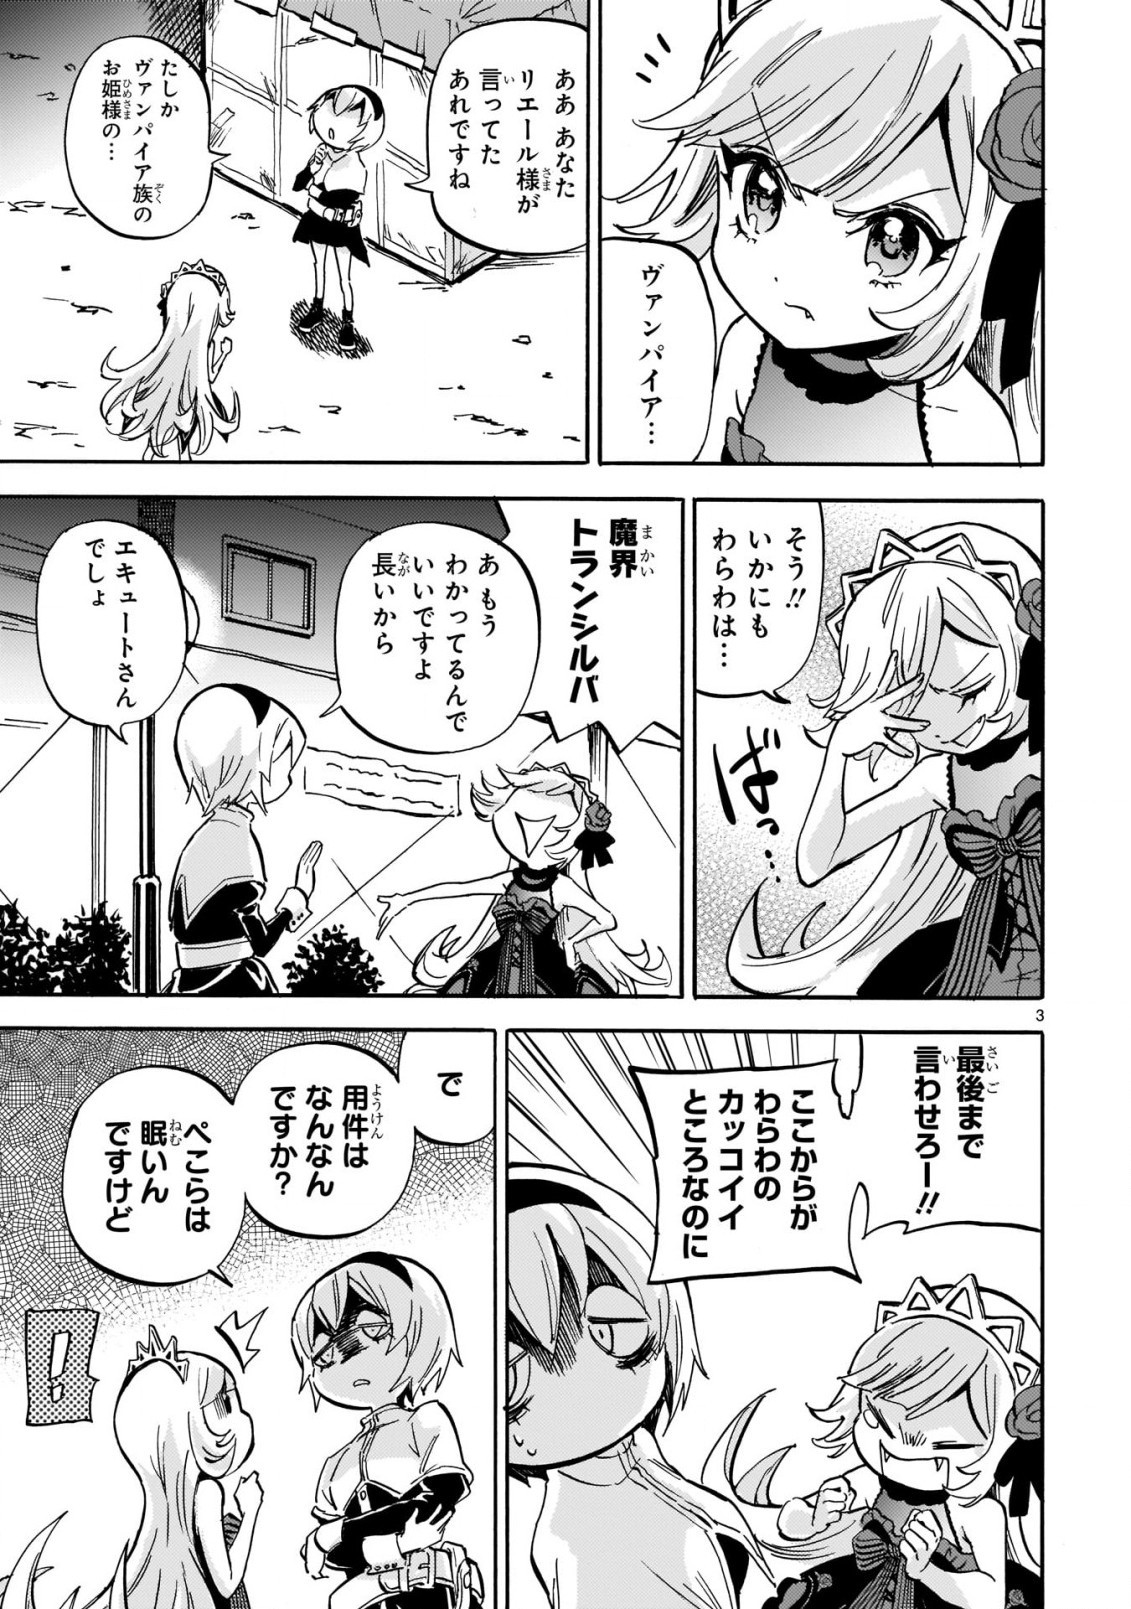 Jashin-chan Dropkick - Chapter 210 - Page 3